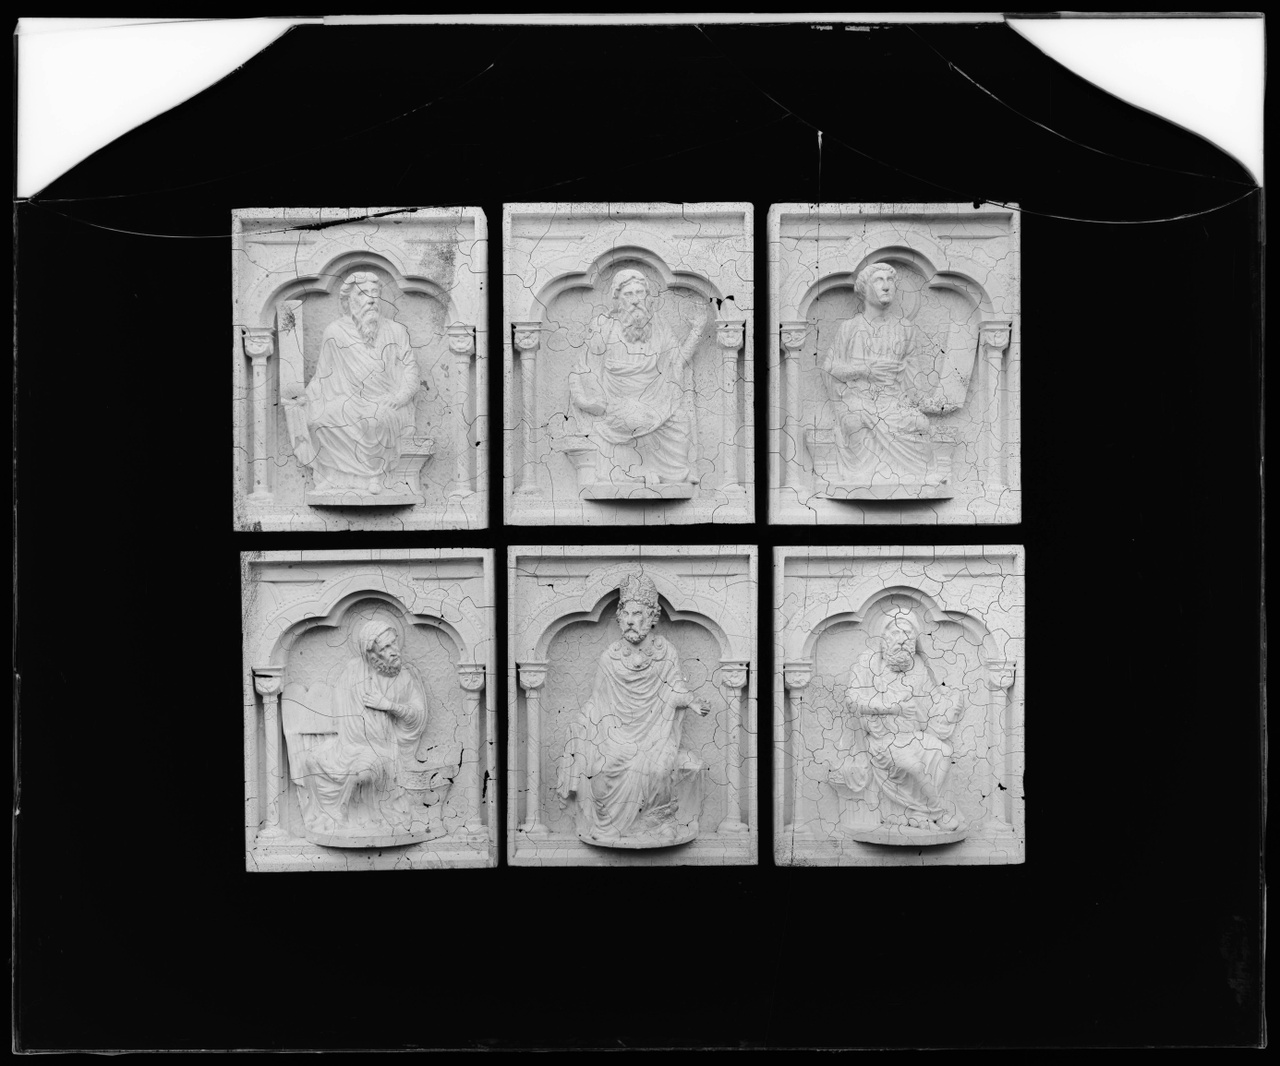 Glasnegatief van foto van producten uit de Cuypers' Kunstwerkplaatsen: "Foto van zes paneeltjes met voorstellingen van zittende mannen, waaronder een bisschop".